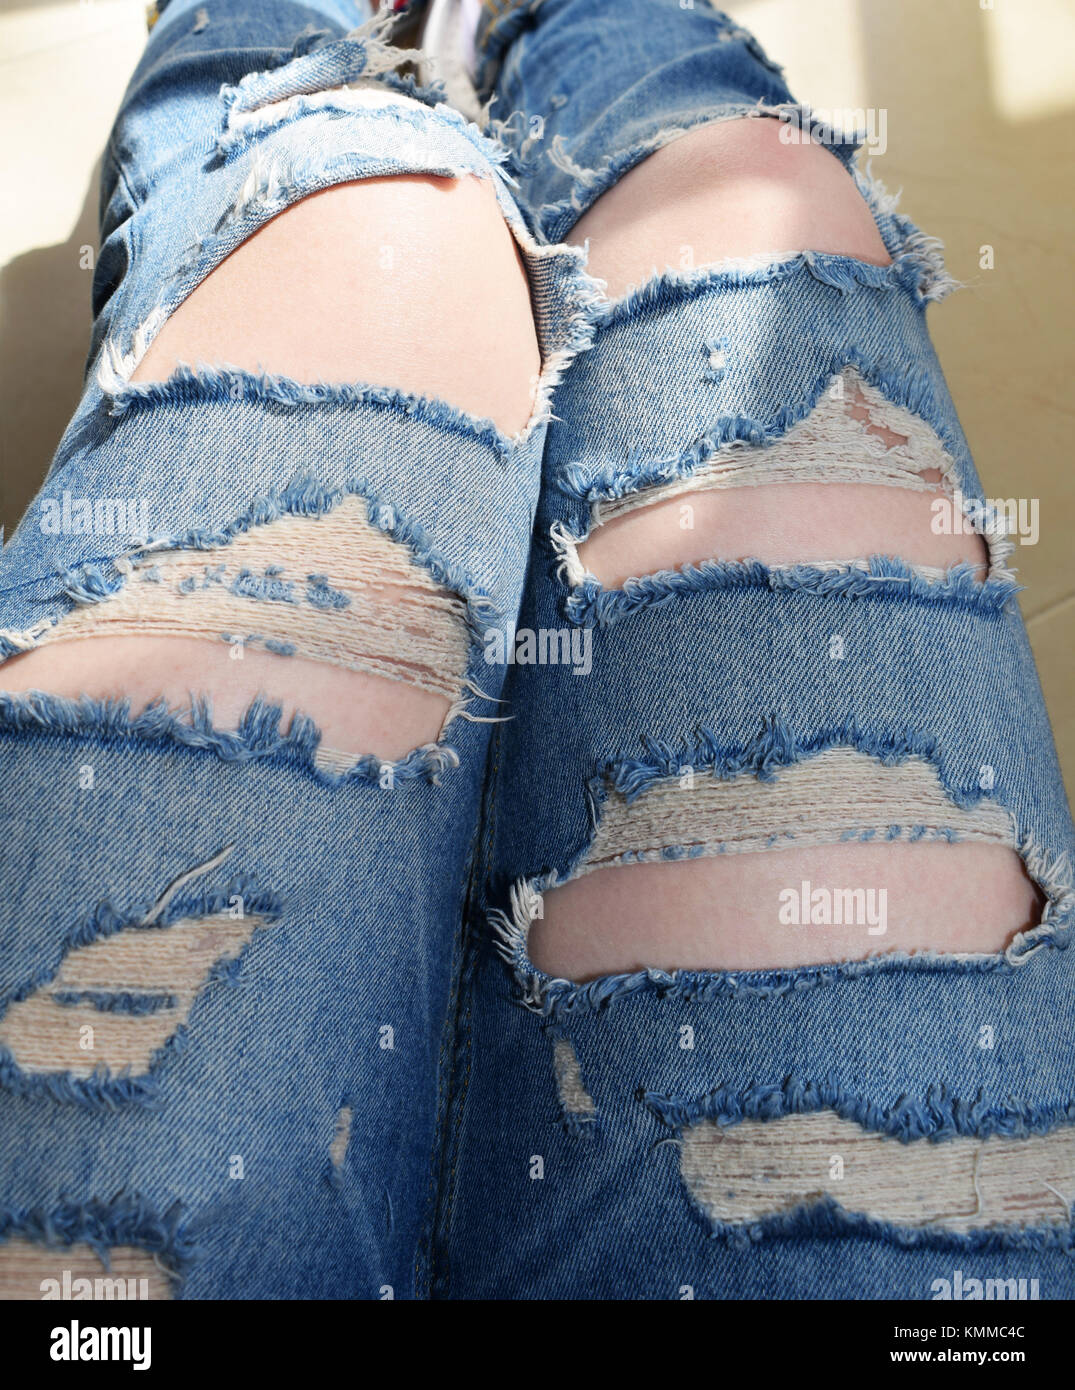 Pantalones rasgados imágenes de alta - Alamy